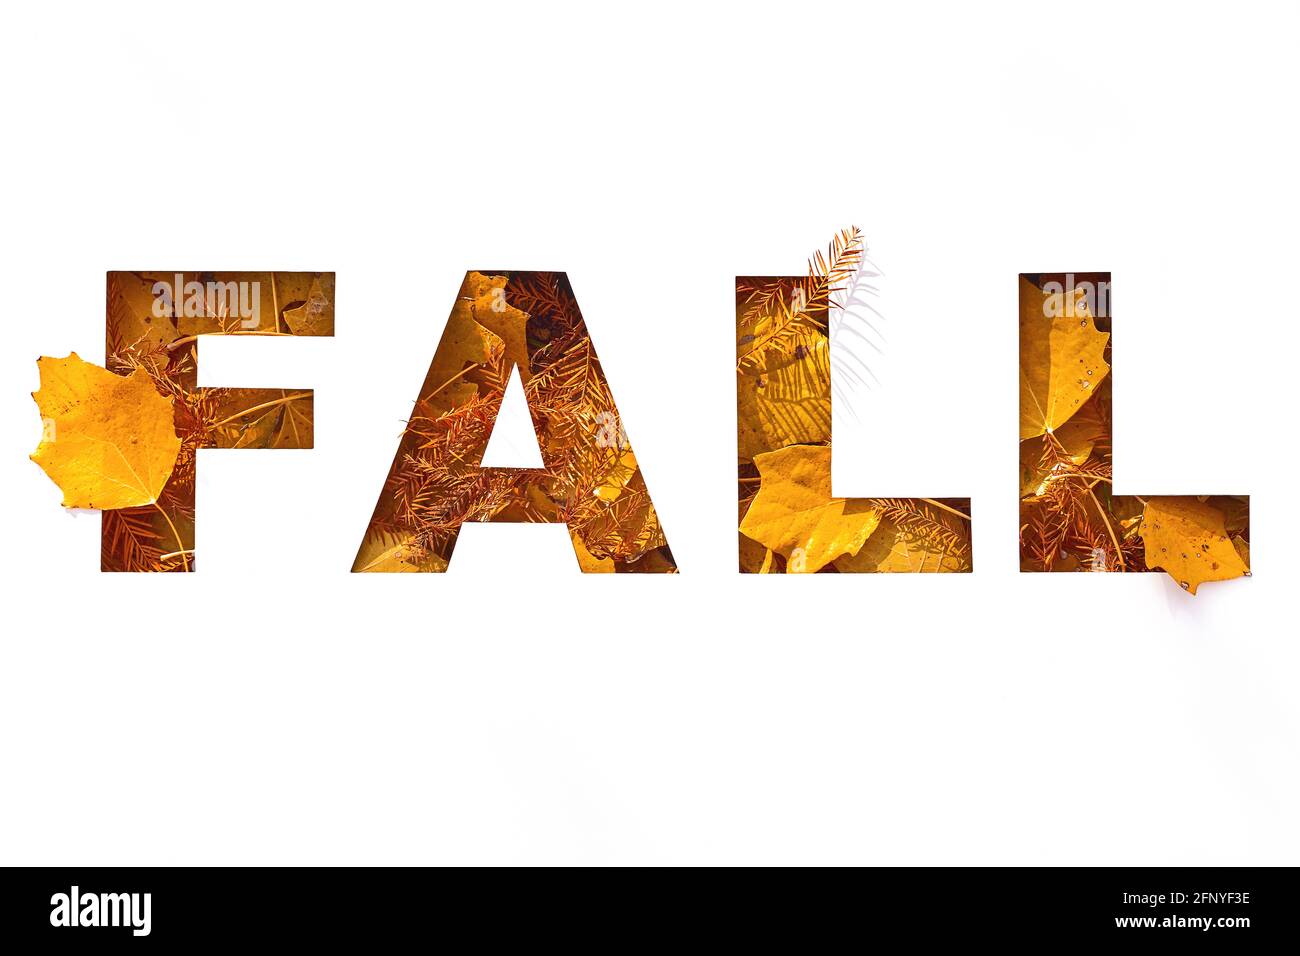 Papel cortado caída texto relleno con textura de amarillo y. naranja otoño hojas Foto de stock